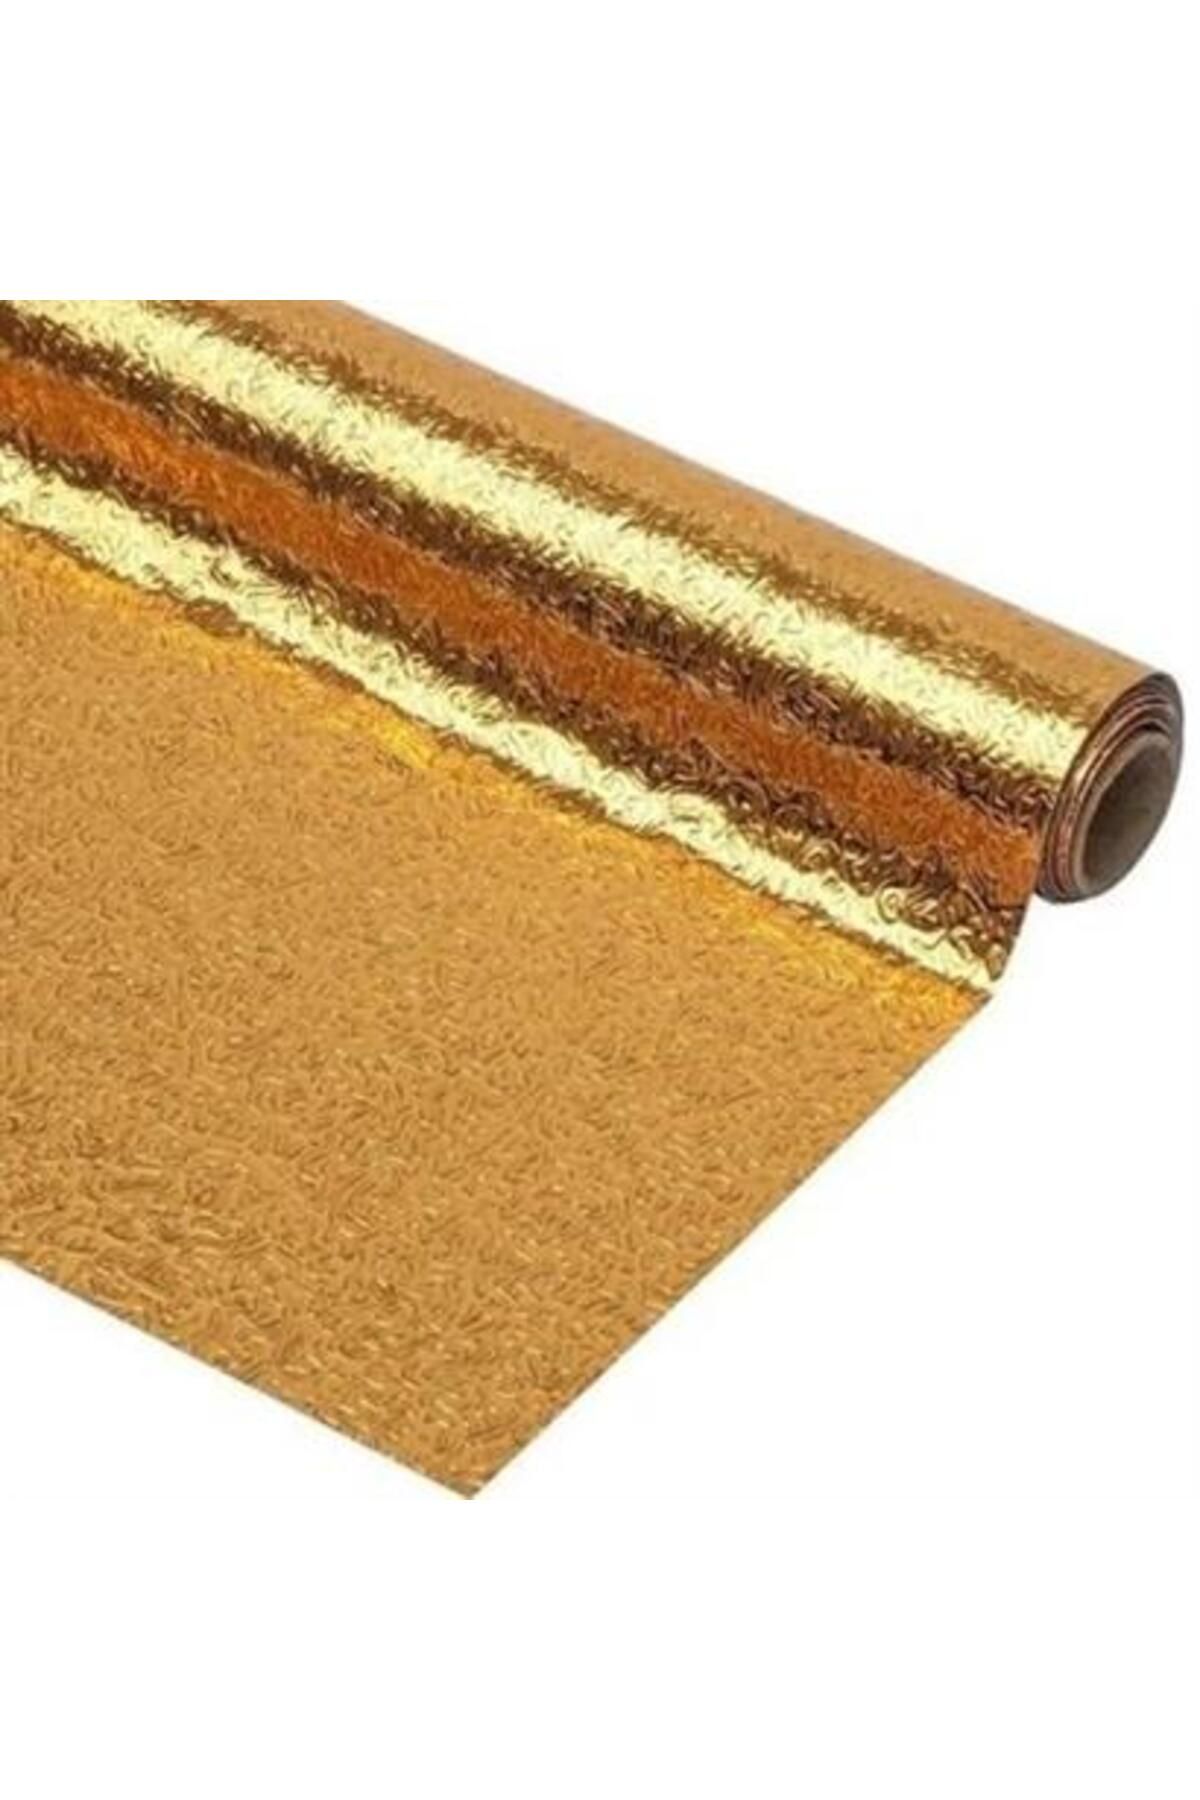 Genel Markalar BUFFER® 10 Metre Kendinden Yapışkanlı Silinebilir Mutfak Tezgah Üstü Sticker Folyo Gold Renk